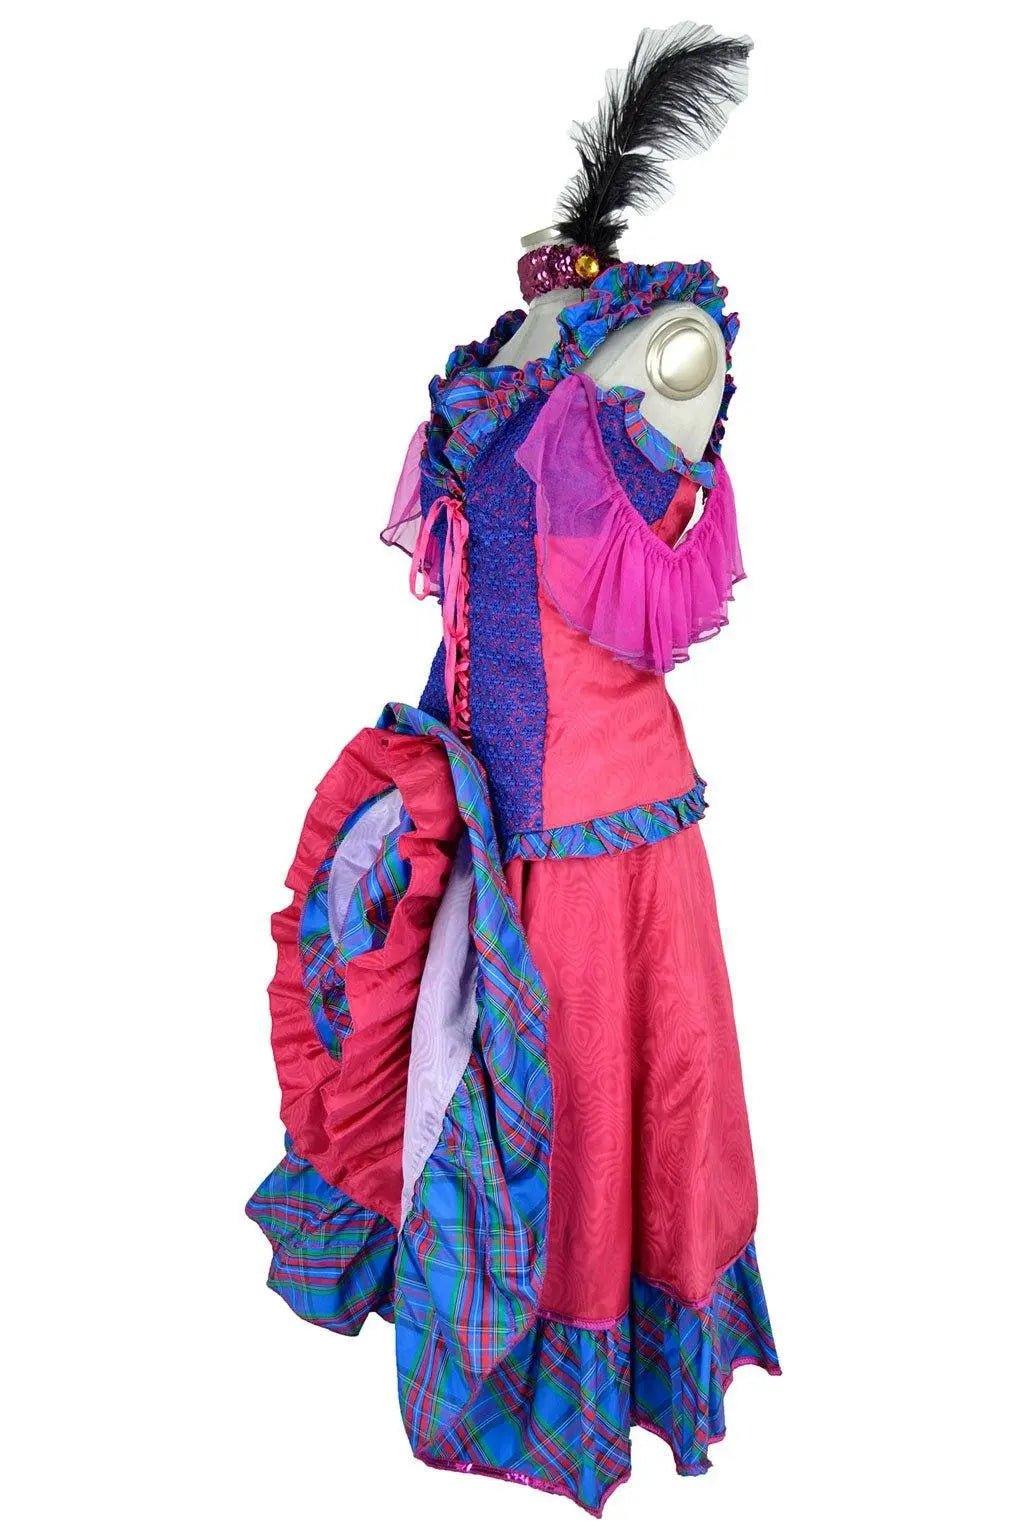 Costume donna per sfilate carnevalesche, balli o personaggi bizzarri -